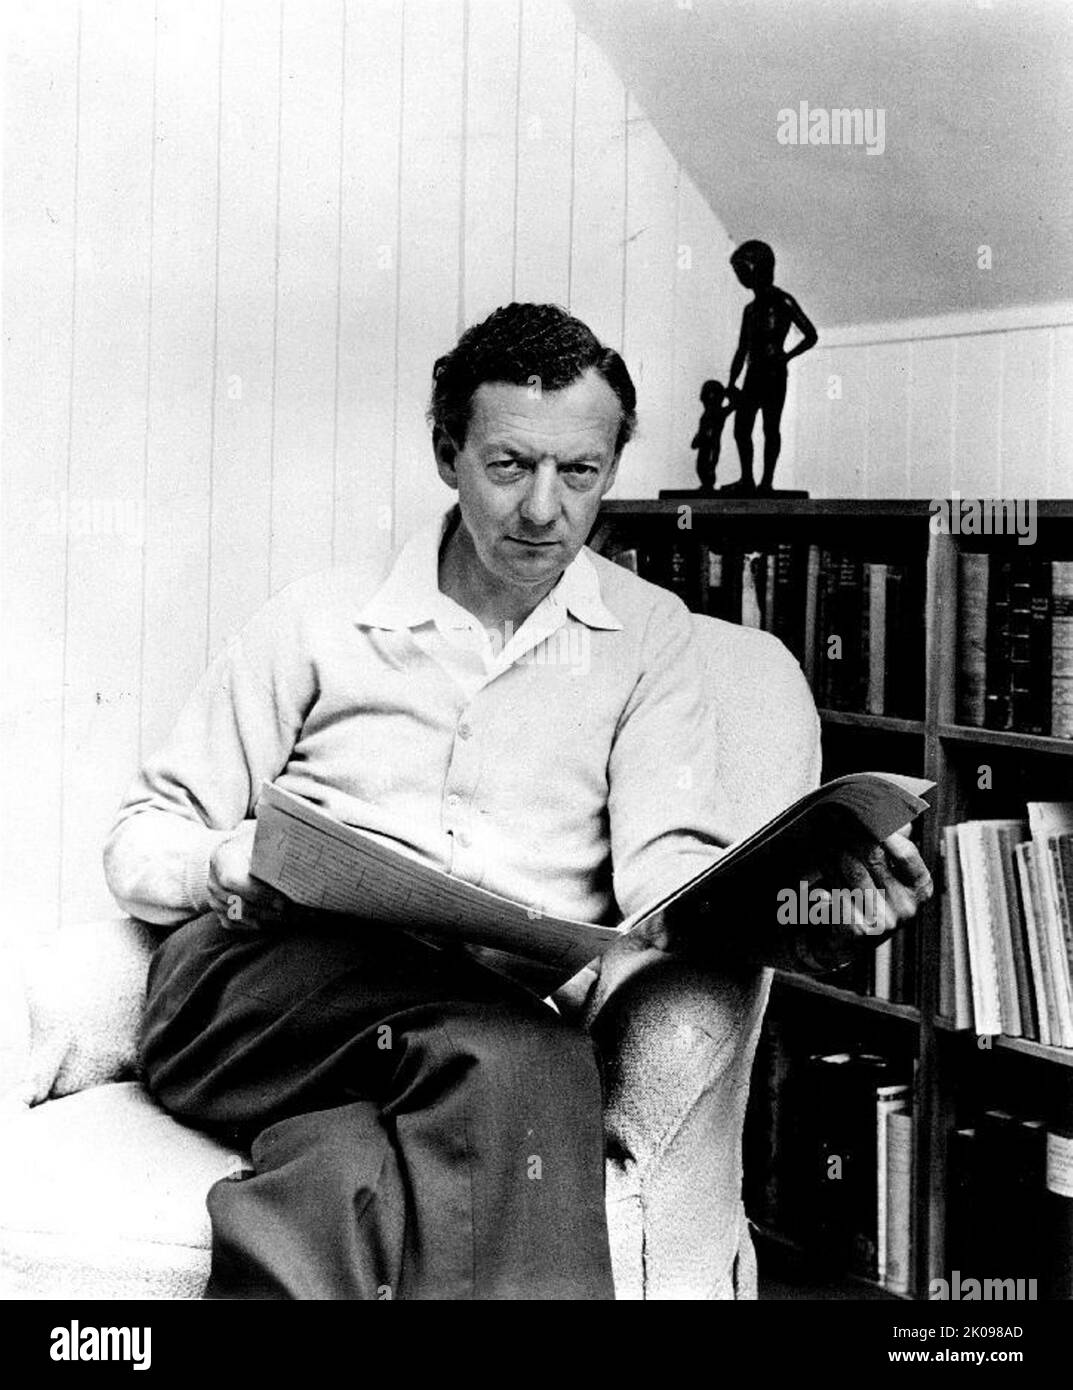 Edward Benjamin Britten, Baron Britten OM CH (22 novembre 1913 - 4 décembre 1976) est un compositeur, chef d'orchestre et pianiste anglais. Il était une figure centrale de la musique britannique du 20th siècle, avec une gamme d'œuvres dont l'opéra, d'autres musiques vocales, orchestrales et de pièces de chambre. Banque D'Images